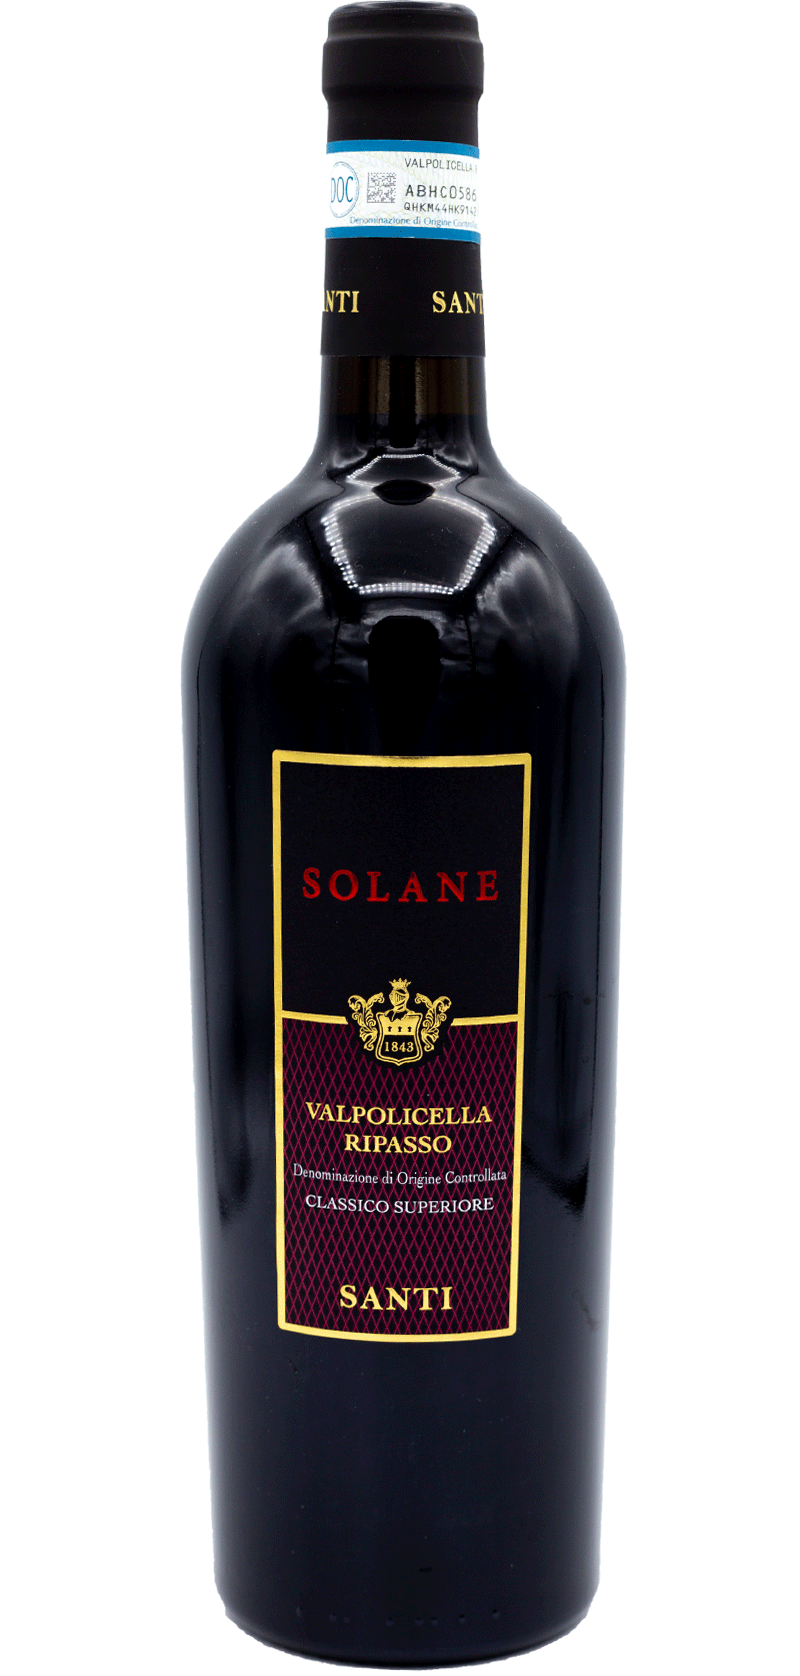 Solane - Valpolicella Ripasso - 2016 - Italian Red Wine